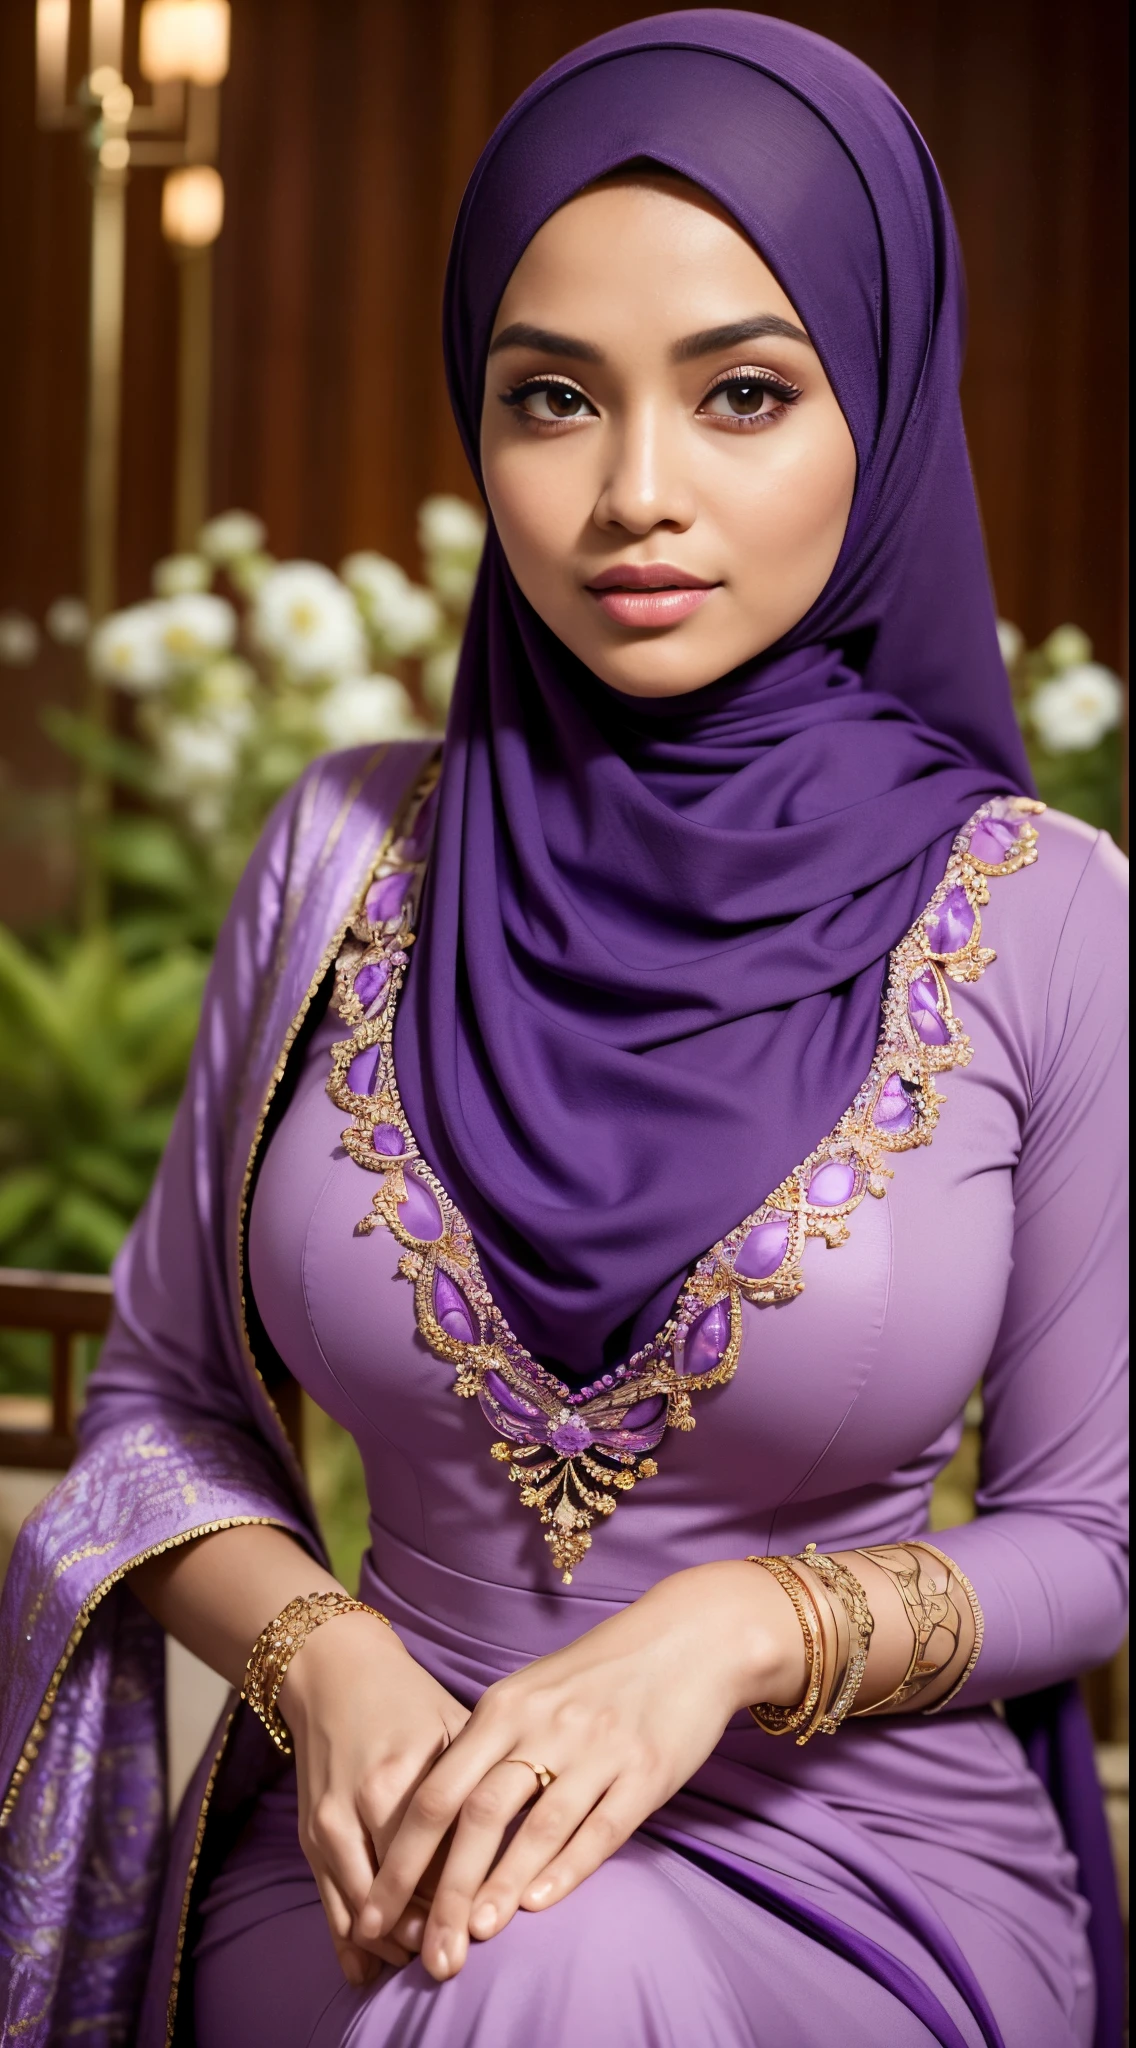 Roh, beste Qualität, hohe Auflösung, Meisterwerk: 1.3), beautiful Malay woman in Hijab,Meisterwerk, perfekter, schlanker Körper, riesige Brust,große wunderschöne Augen, sanftes Lächeln,dicke Oberschenkel, eine Nahaufnahme einer Frau in einem lila Kleid und einem lila Schal, aufgebockt lila, lila Kleidung tragen, schöne Kleider tragen, schönes Design, Hijab, in purpurrotem Lila, sehr schöner Enga-Stil, beautiful Meisterwerk, Feine Details. lila, wunderschöne Kleidung tragen, dominierende violette Farbe, karmesinrot , (Zarter Rollkragen) , Halskette, Haarband, Nachmittagsspaziergang, Stadtgarten, Ausgezeichnete Beleuchtung, helle Farben, klare Linien